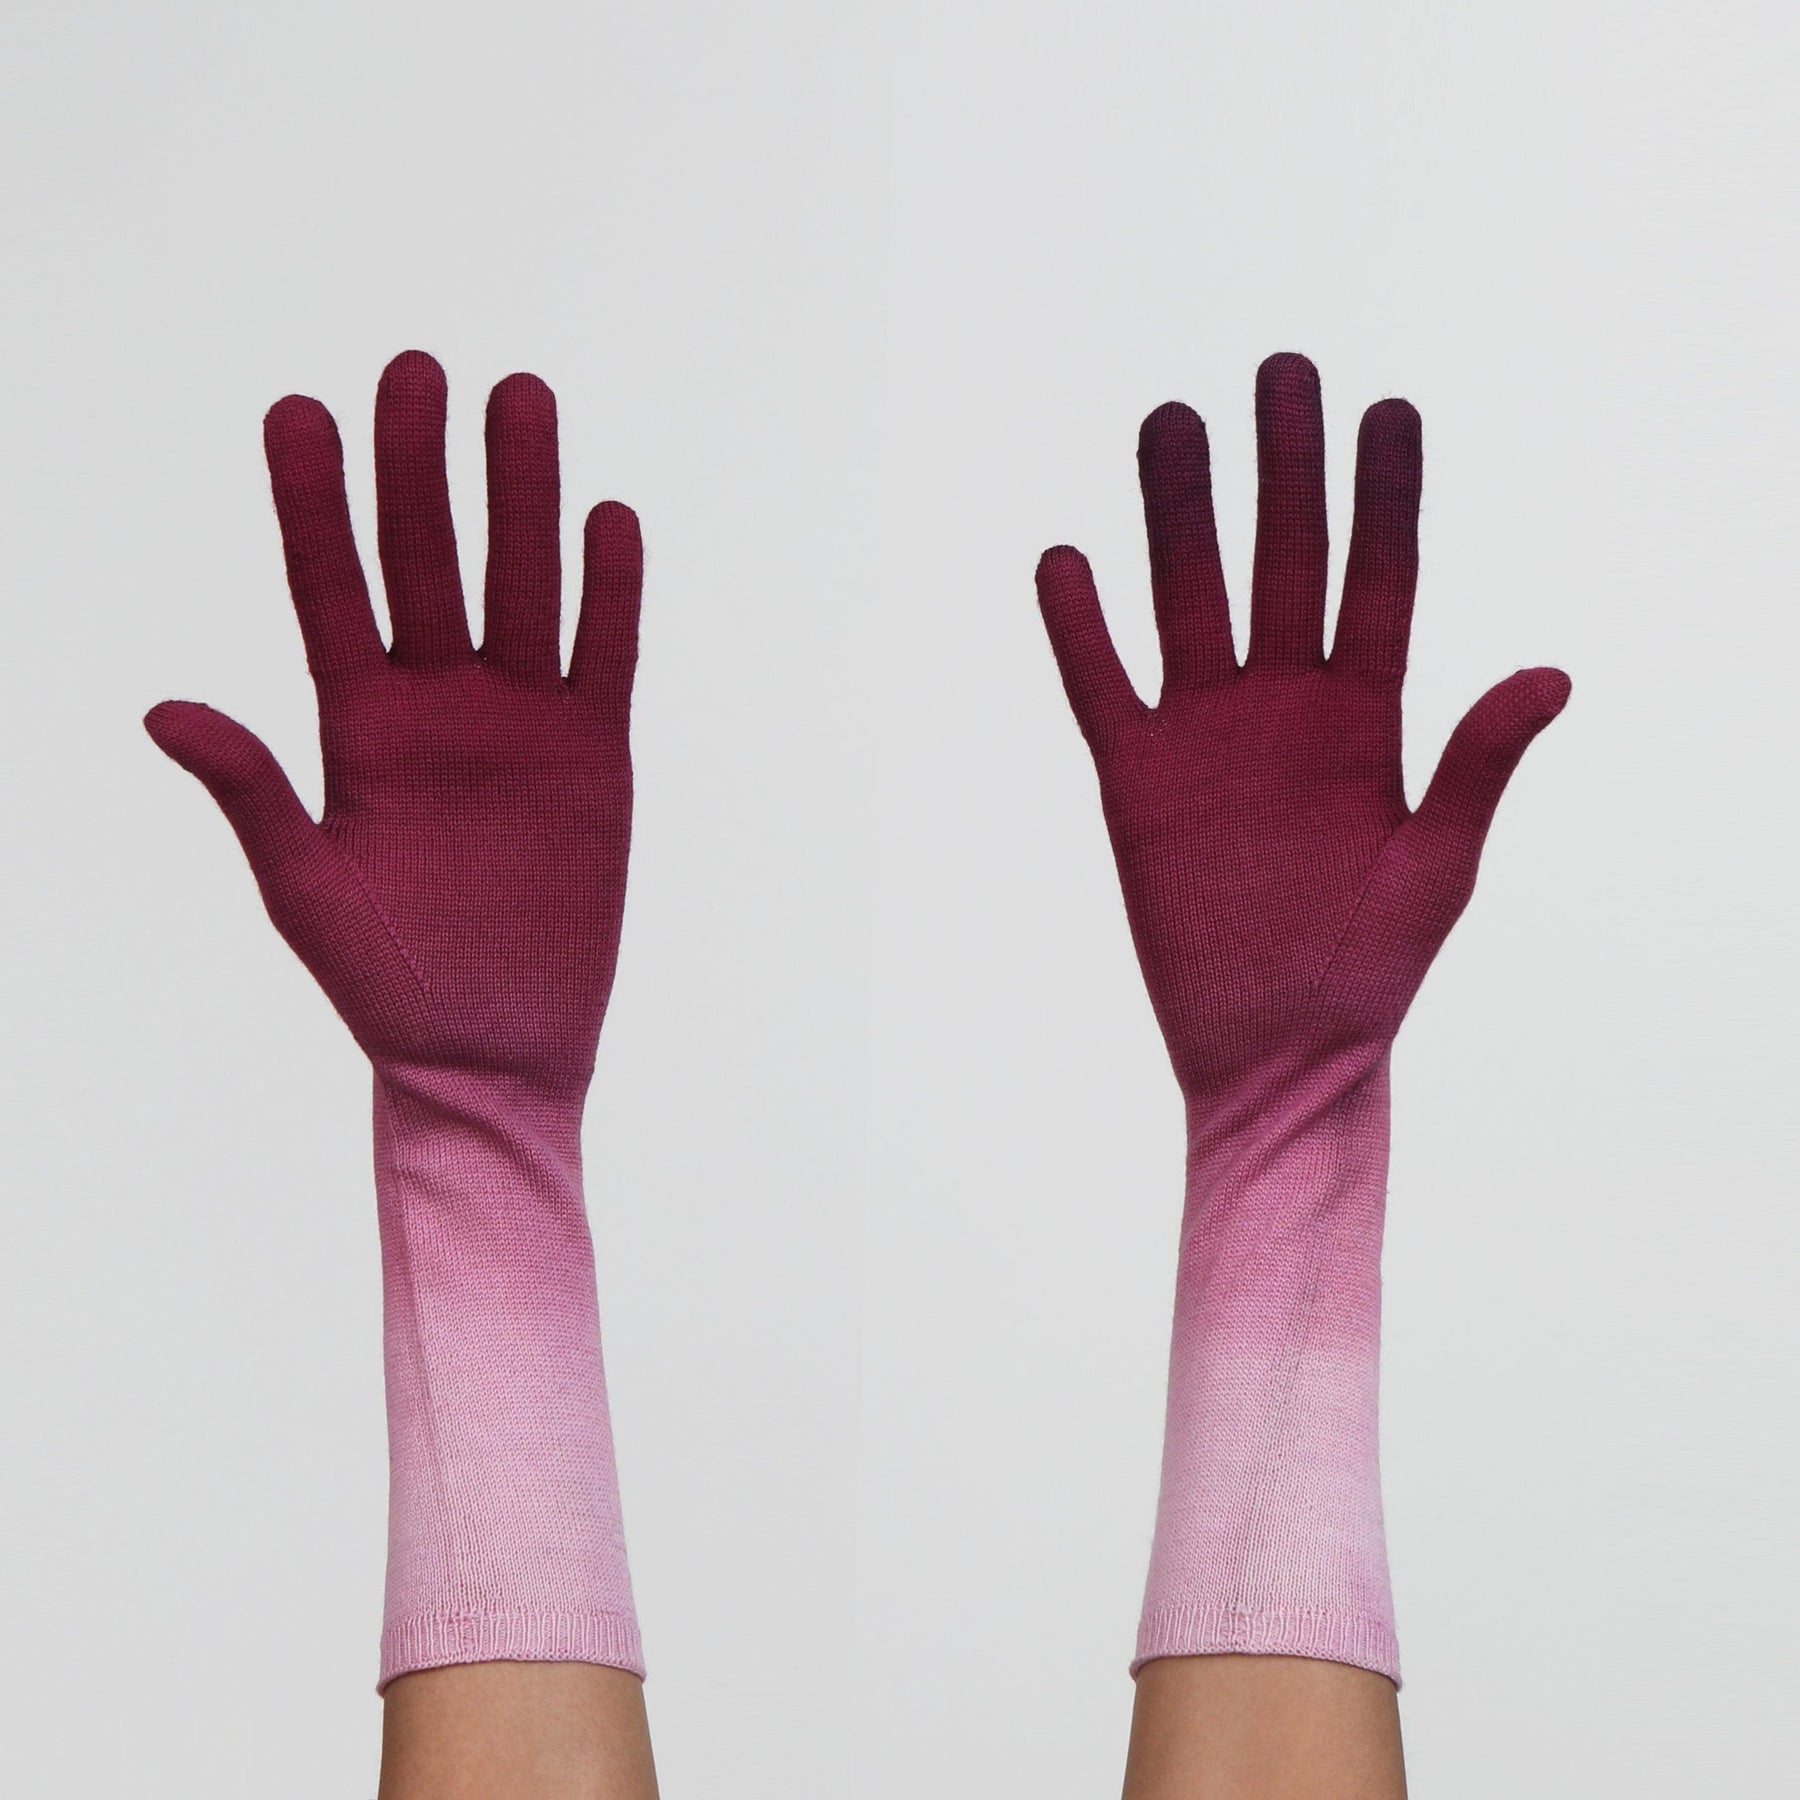 Purple Gloves by Seymoure Gloves.